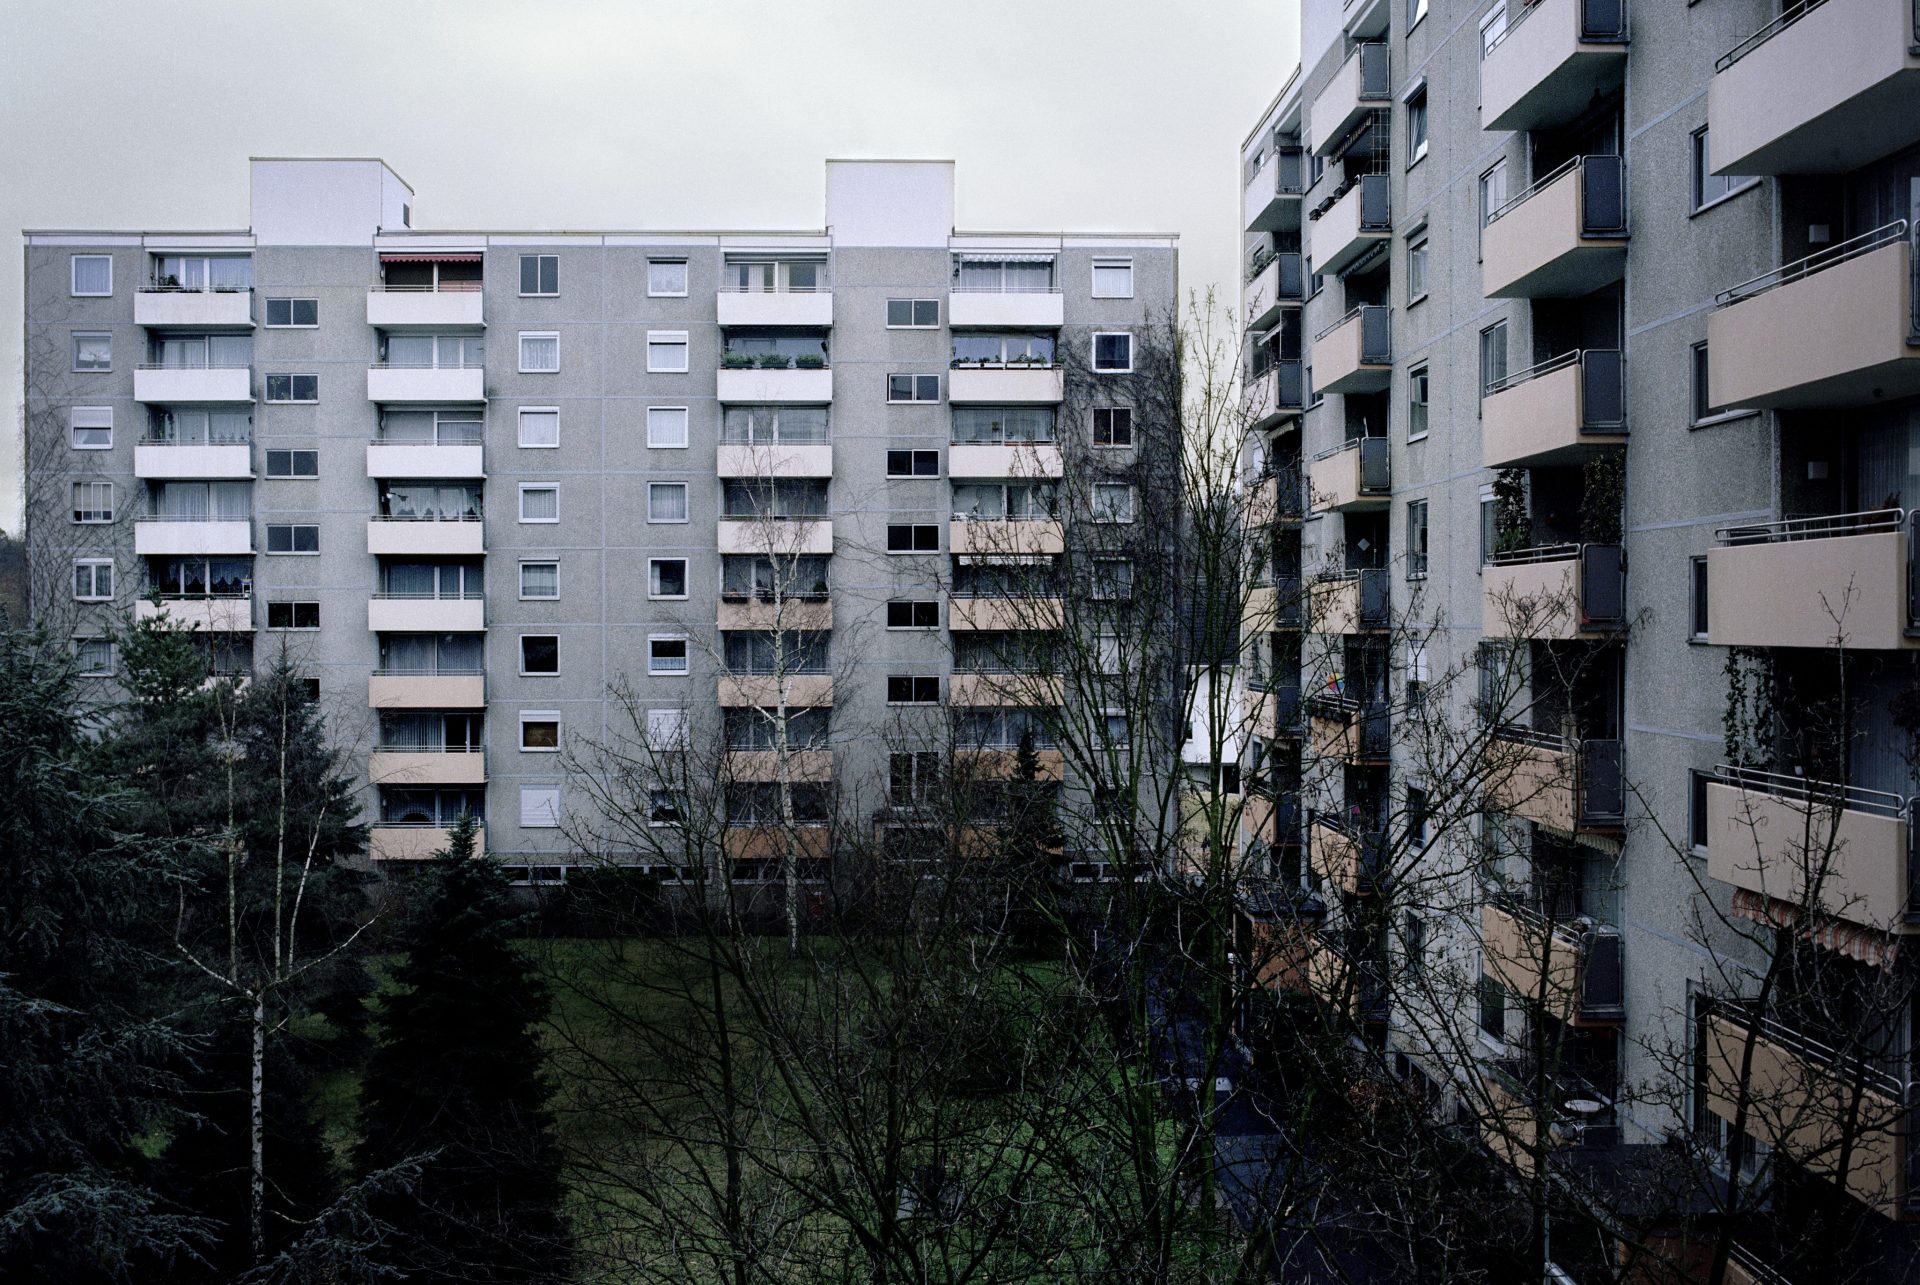 Fensterblicke, 2005